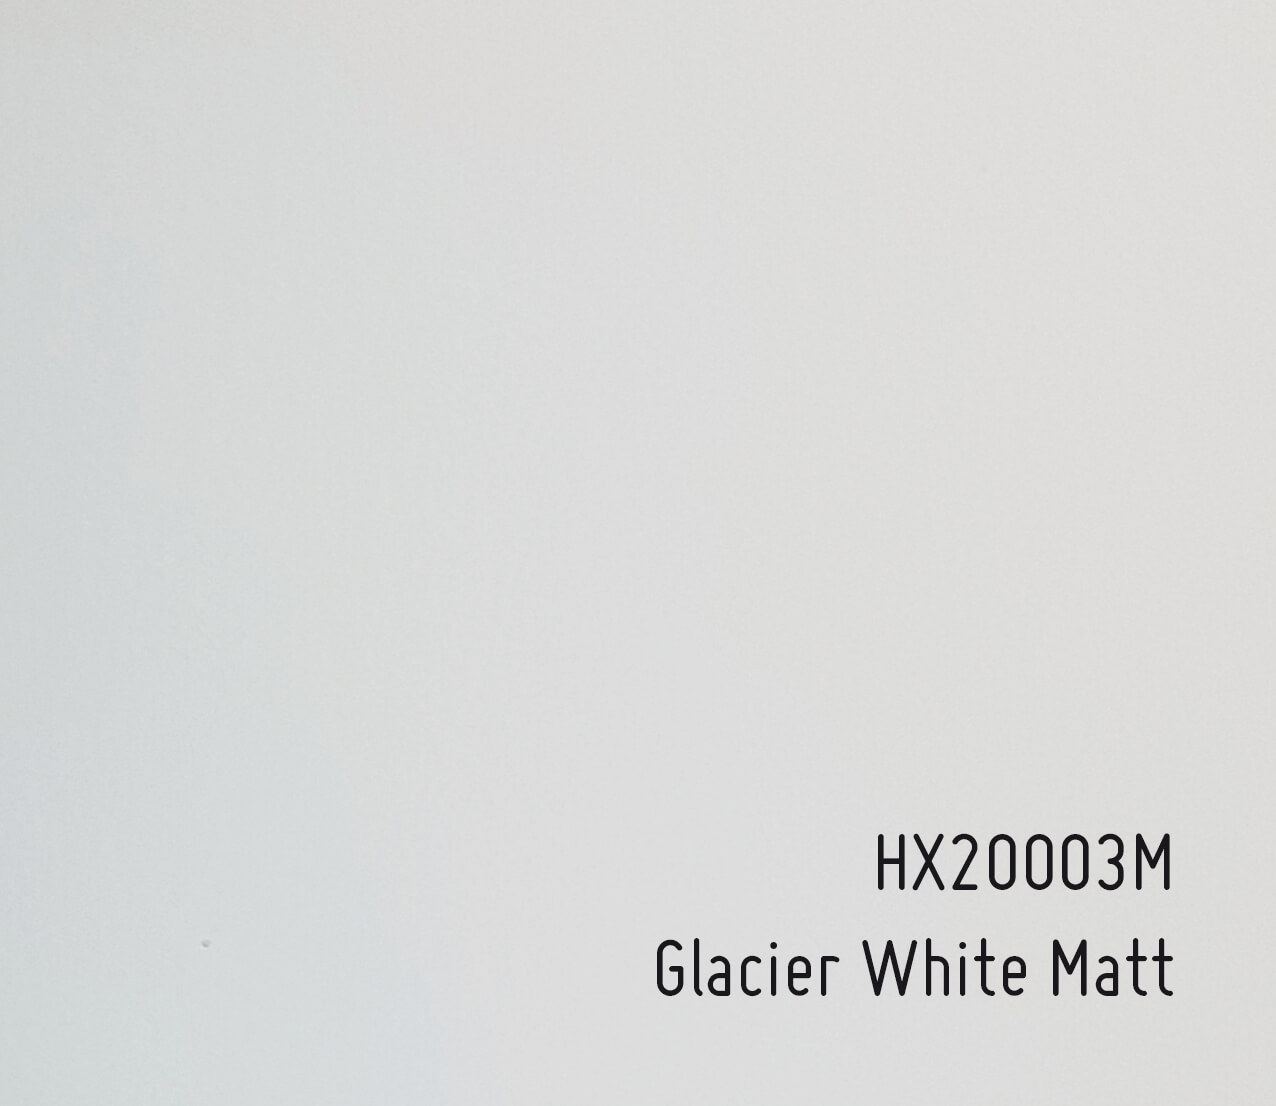 https://www.wegaswerbung-shop.de/media/image/63/da/b7/Autofolie-HX20003M_Glacier-White-Matt.jpg